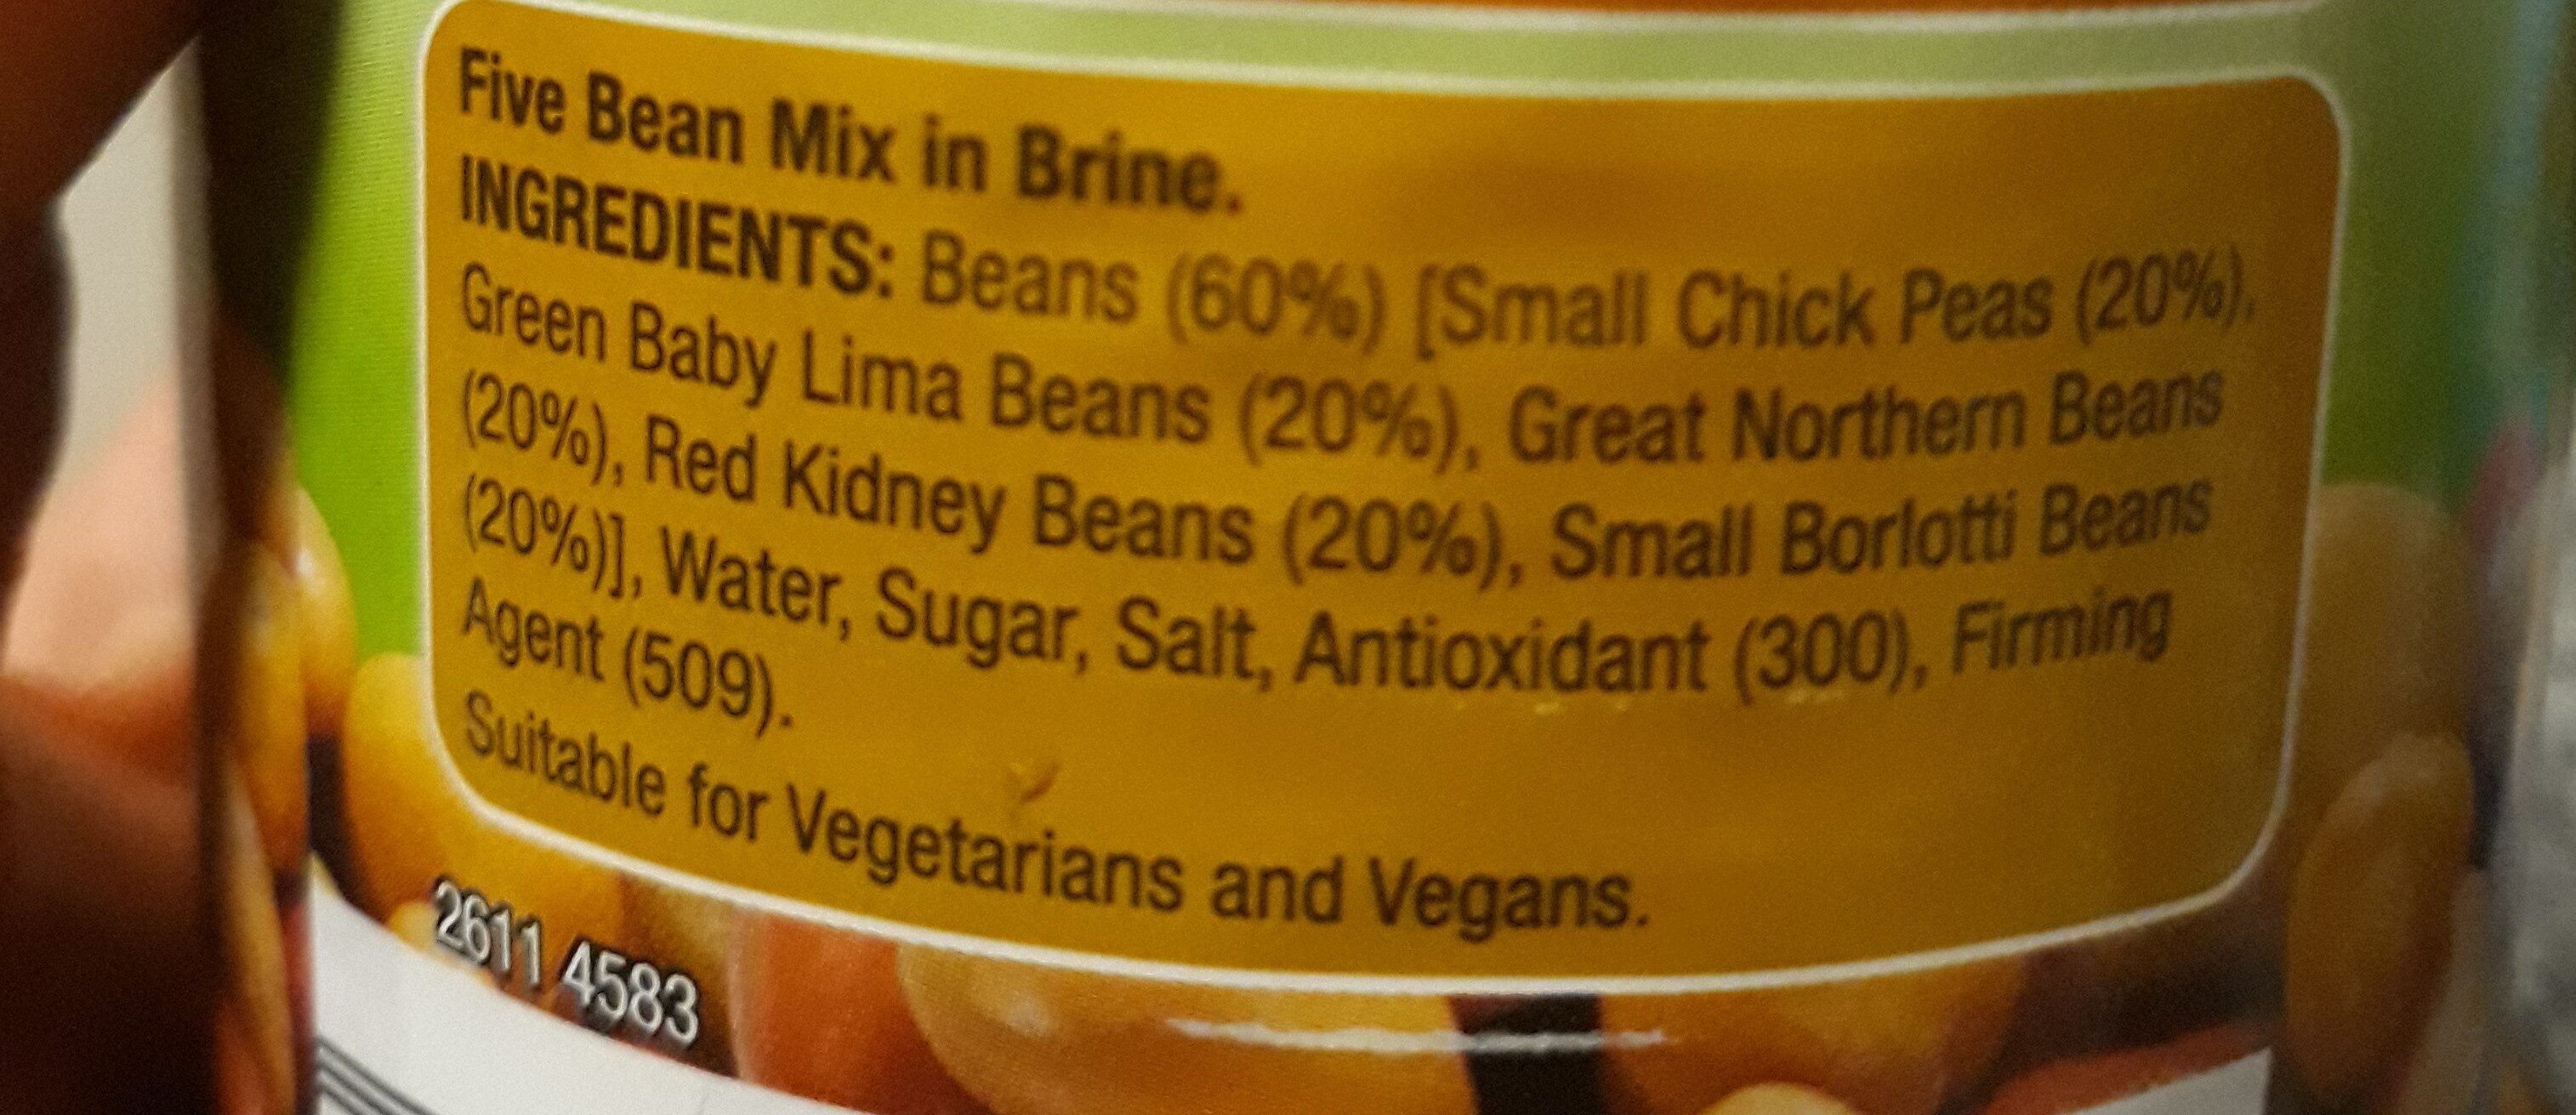 5 bean mix - Ingredients